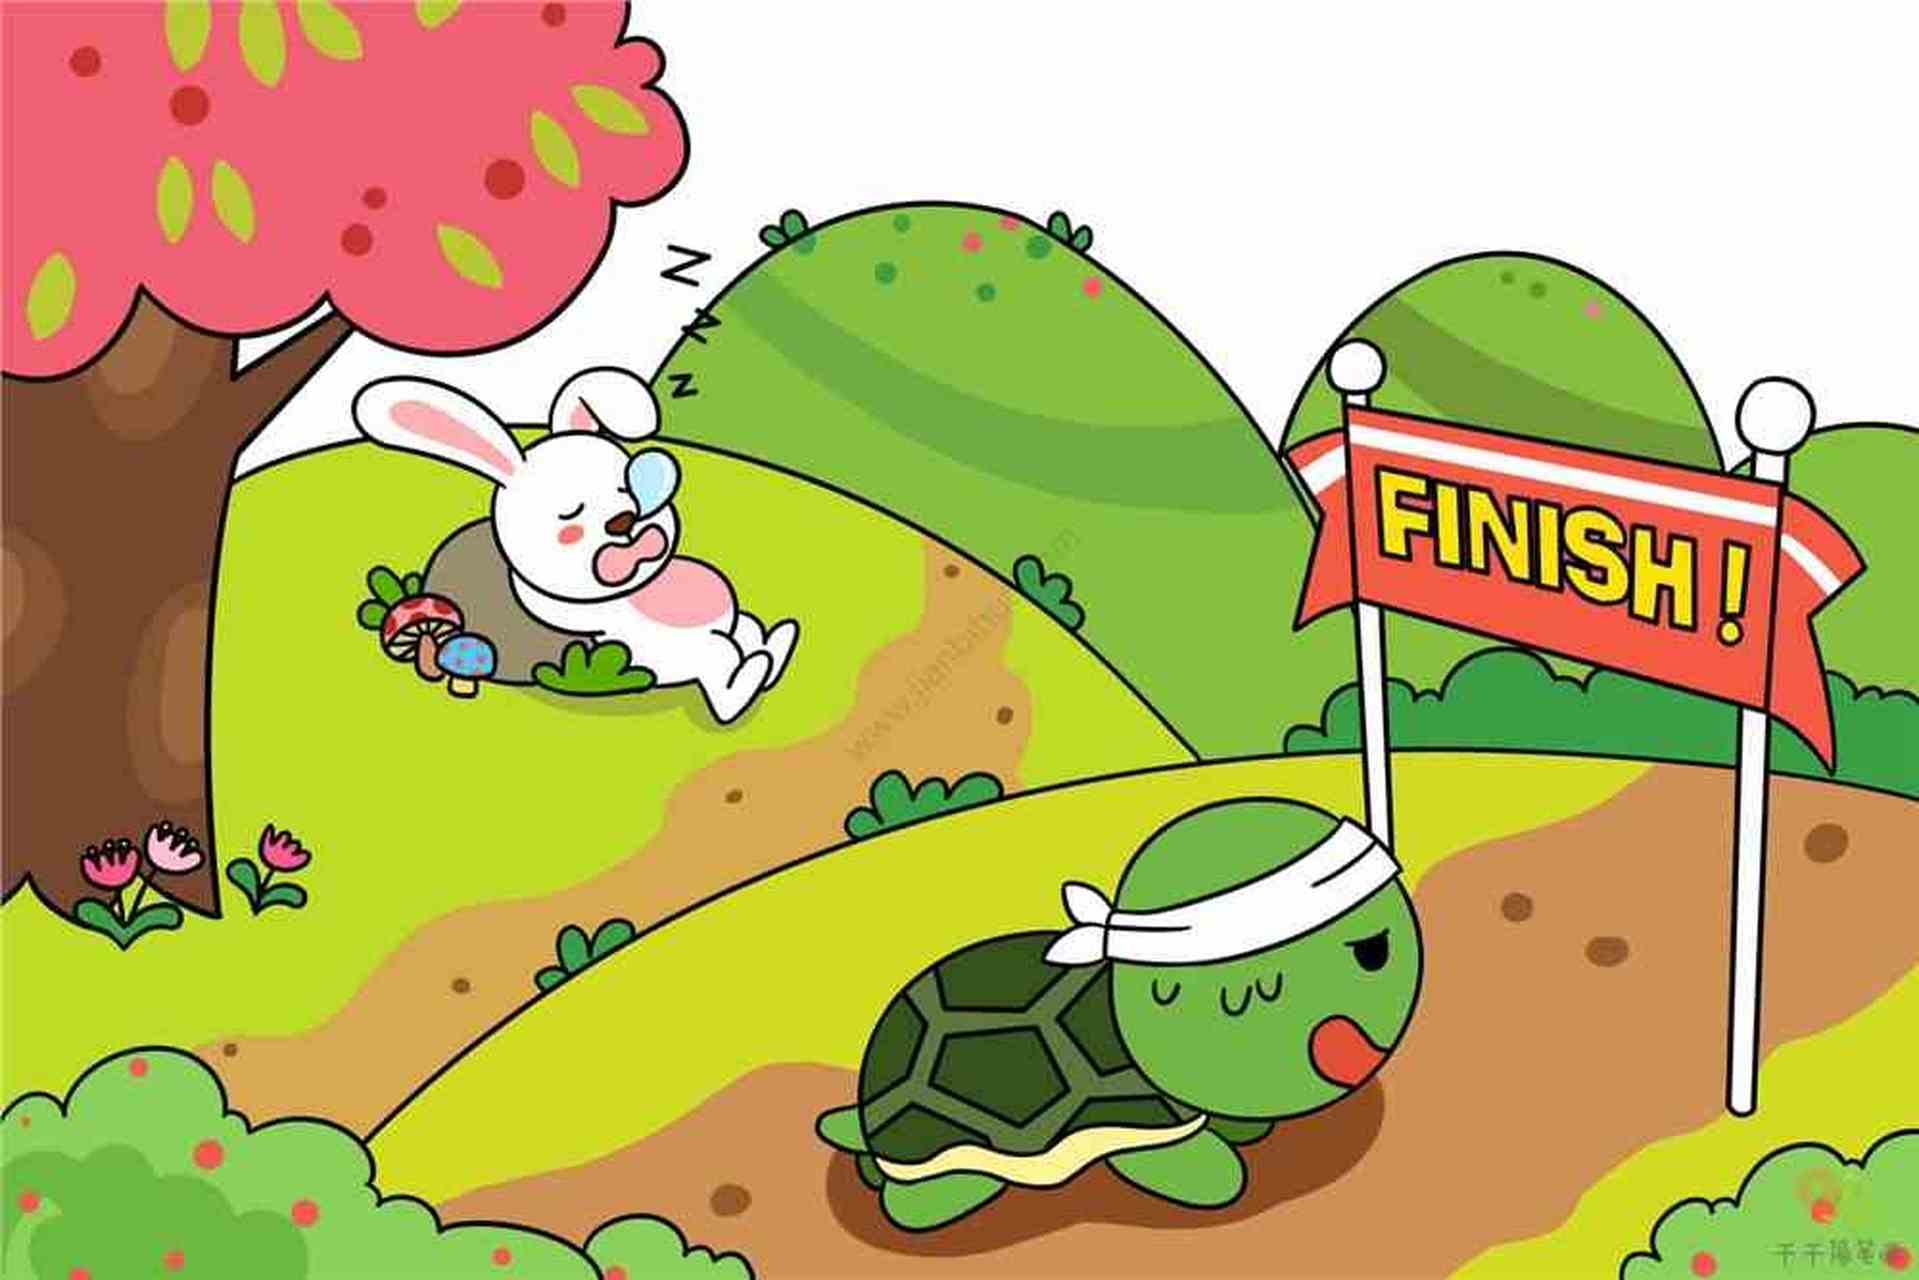 龟兔赛跑都读过,乌龟跑得慢,一直在跑,兔子跑得快,半道偷闲,结果乌龟